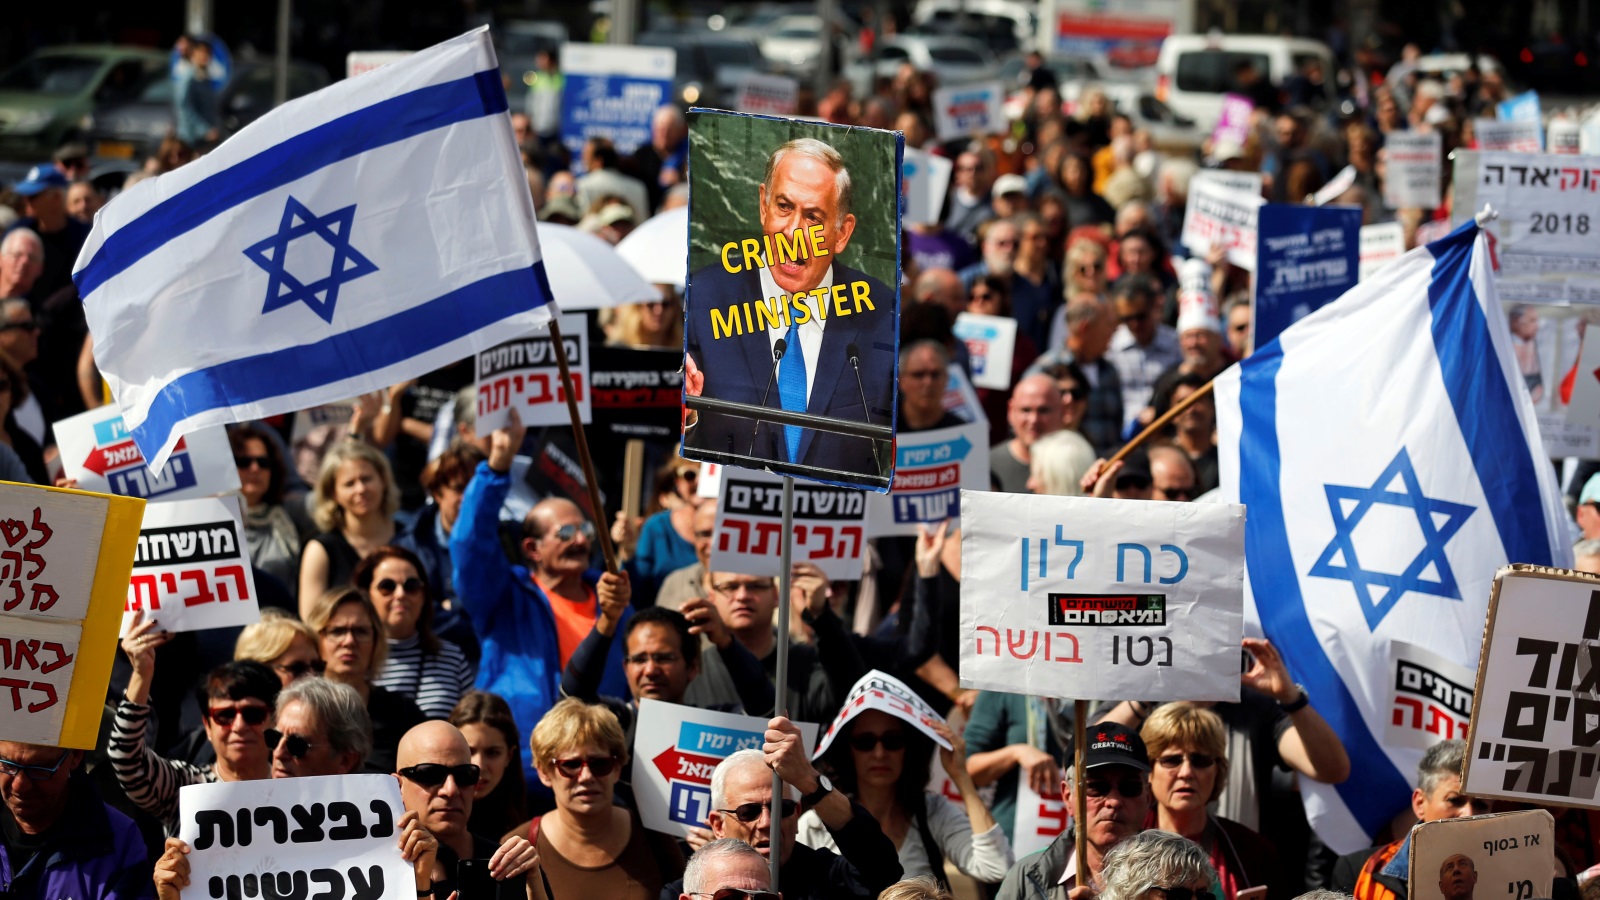 ‪الإسرائيليون تظاهروا في فبراير/شباط الماضي مطالبين برحيل نتنياهو بعد اتهامه بالفساد‬ الإسرائيليون تظاهروا في فبراير/شباط الماضي مطالبين برحيل نتنياهو بعد اتهامه بالفساد (رويترز)